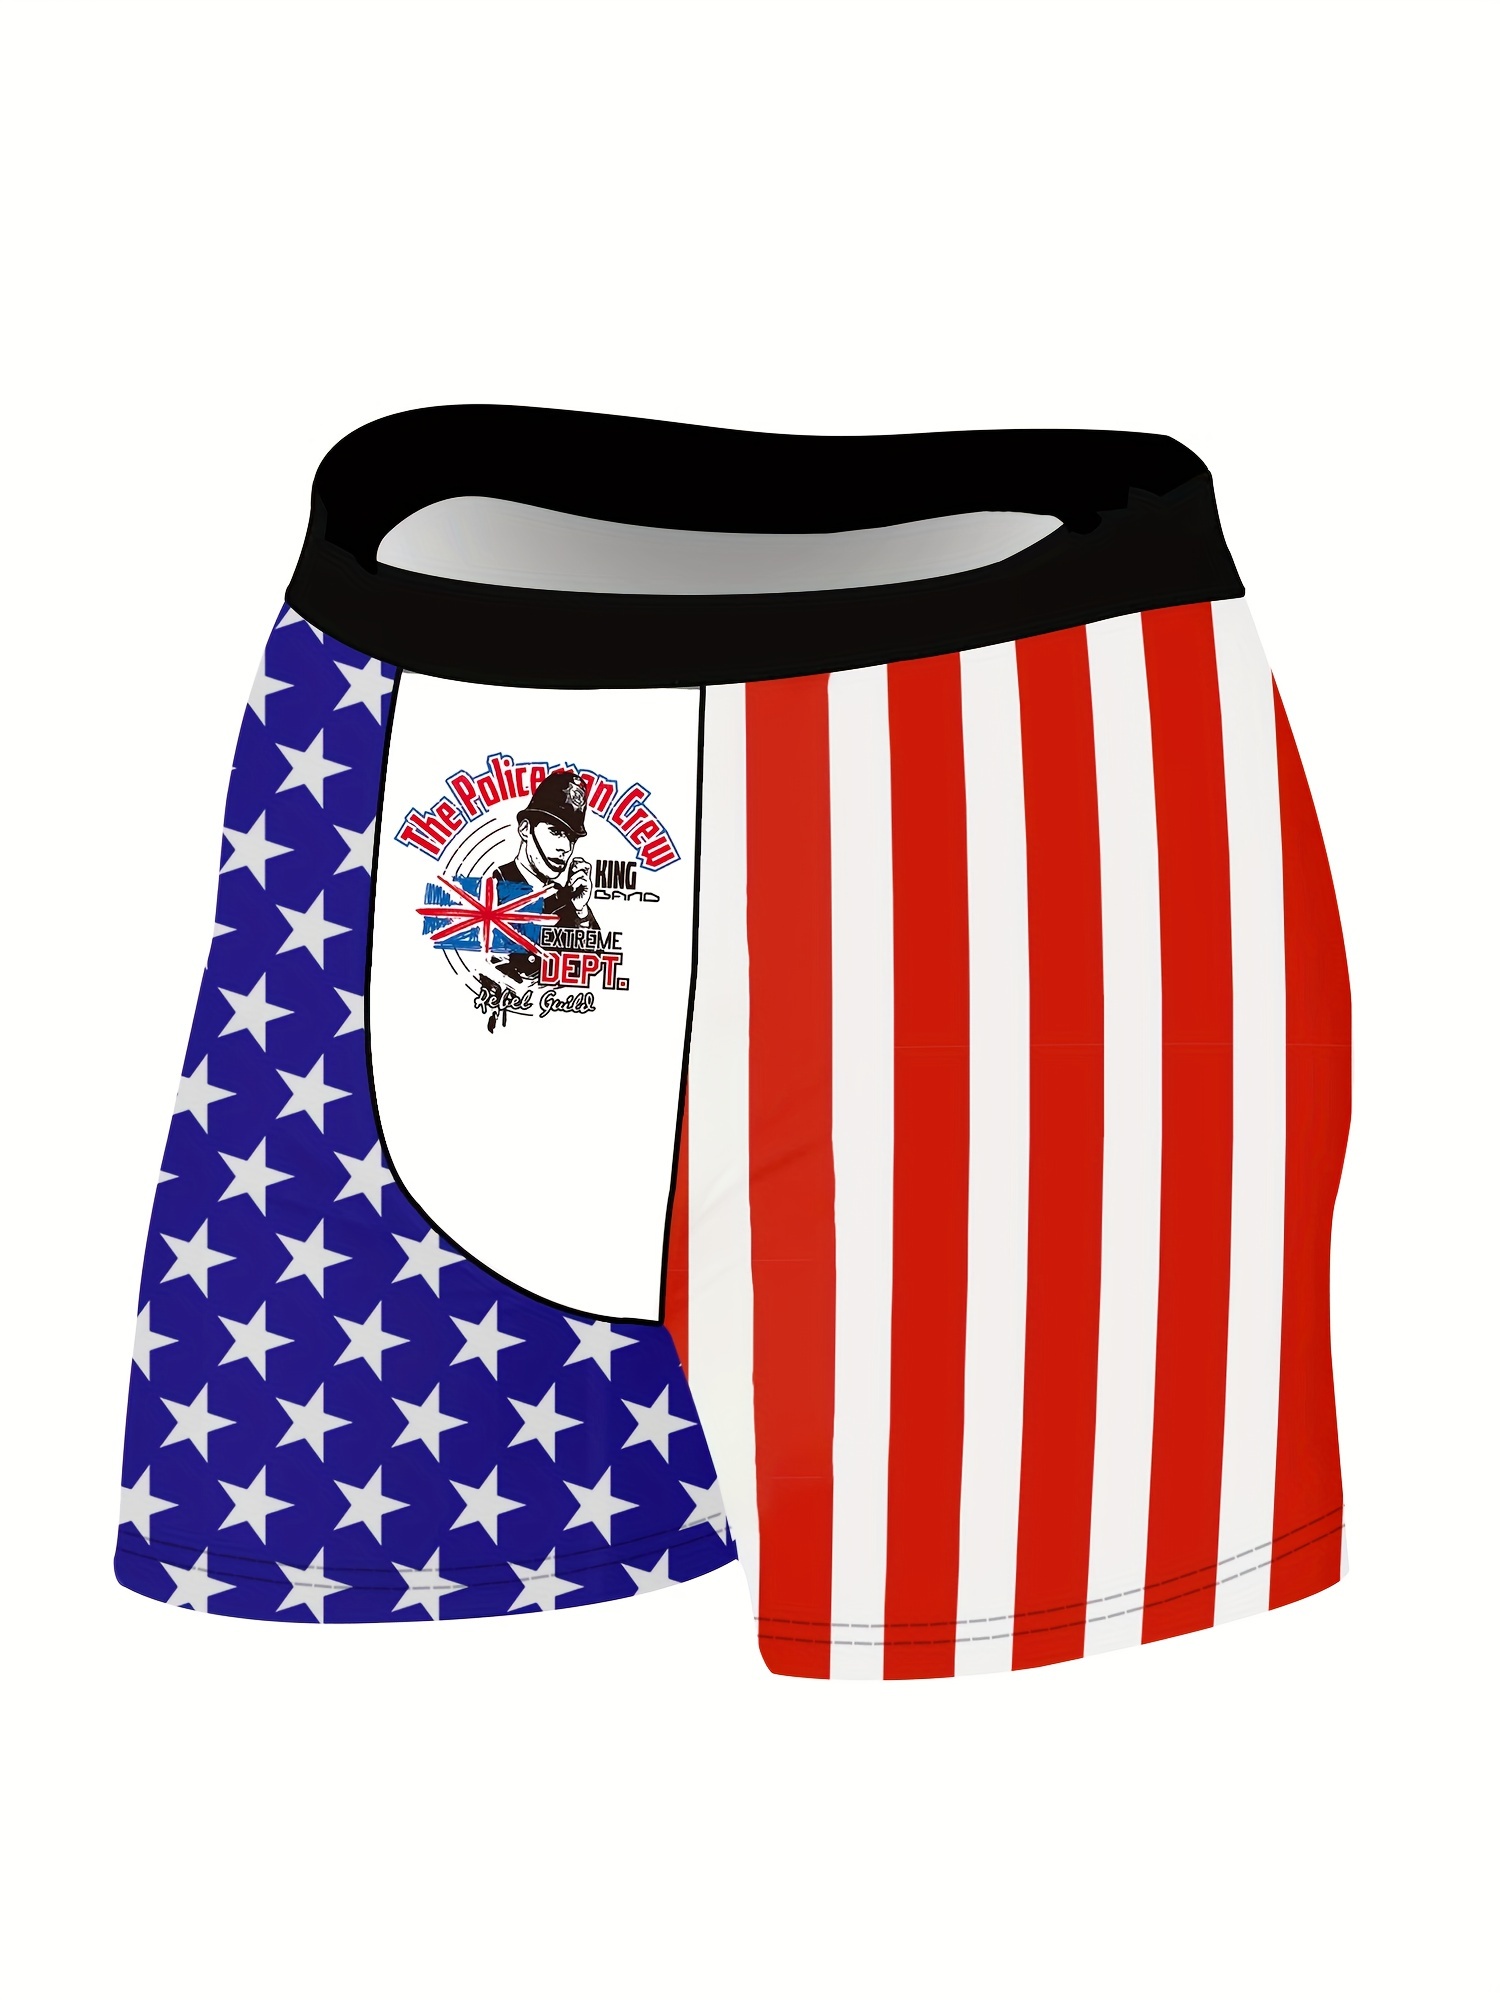  Men's Funny Underwear Boxer Briefs, Patriotic USA